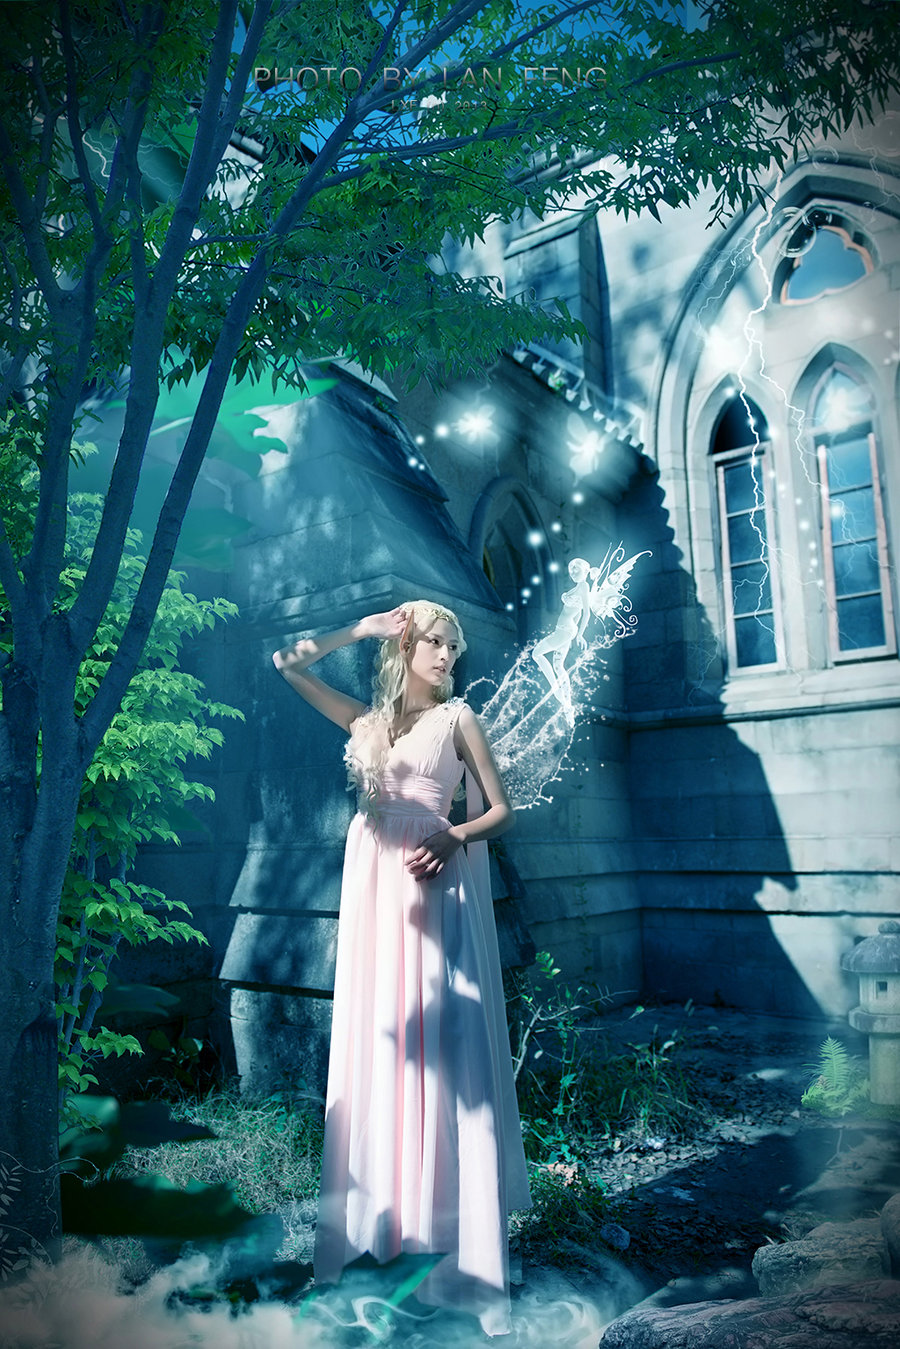 【精灵女王-《魔法城堡》摄影图片】人像摄影